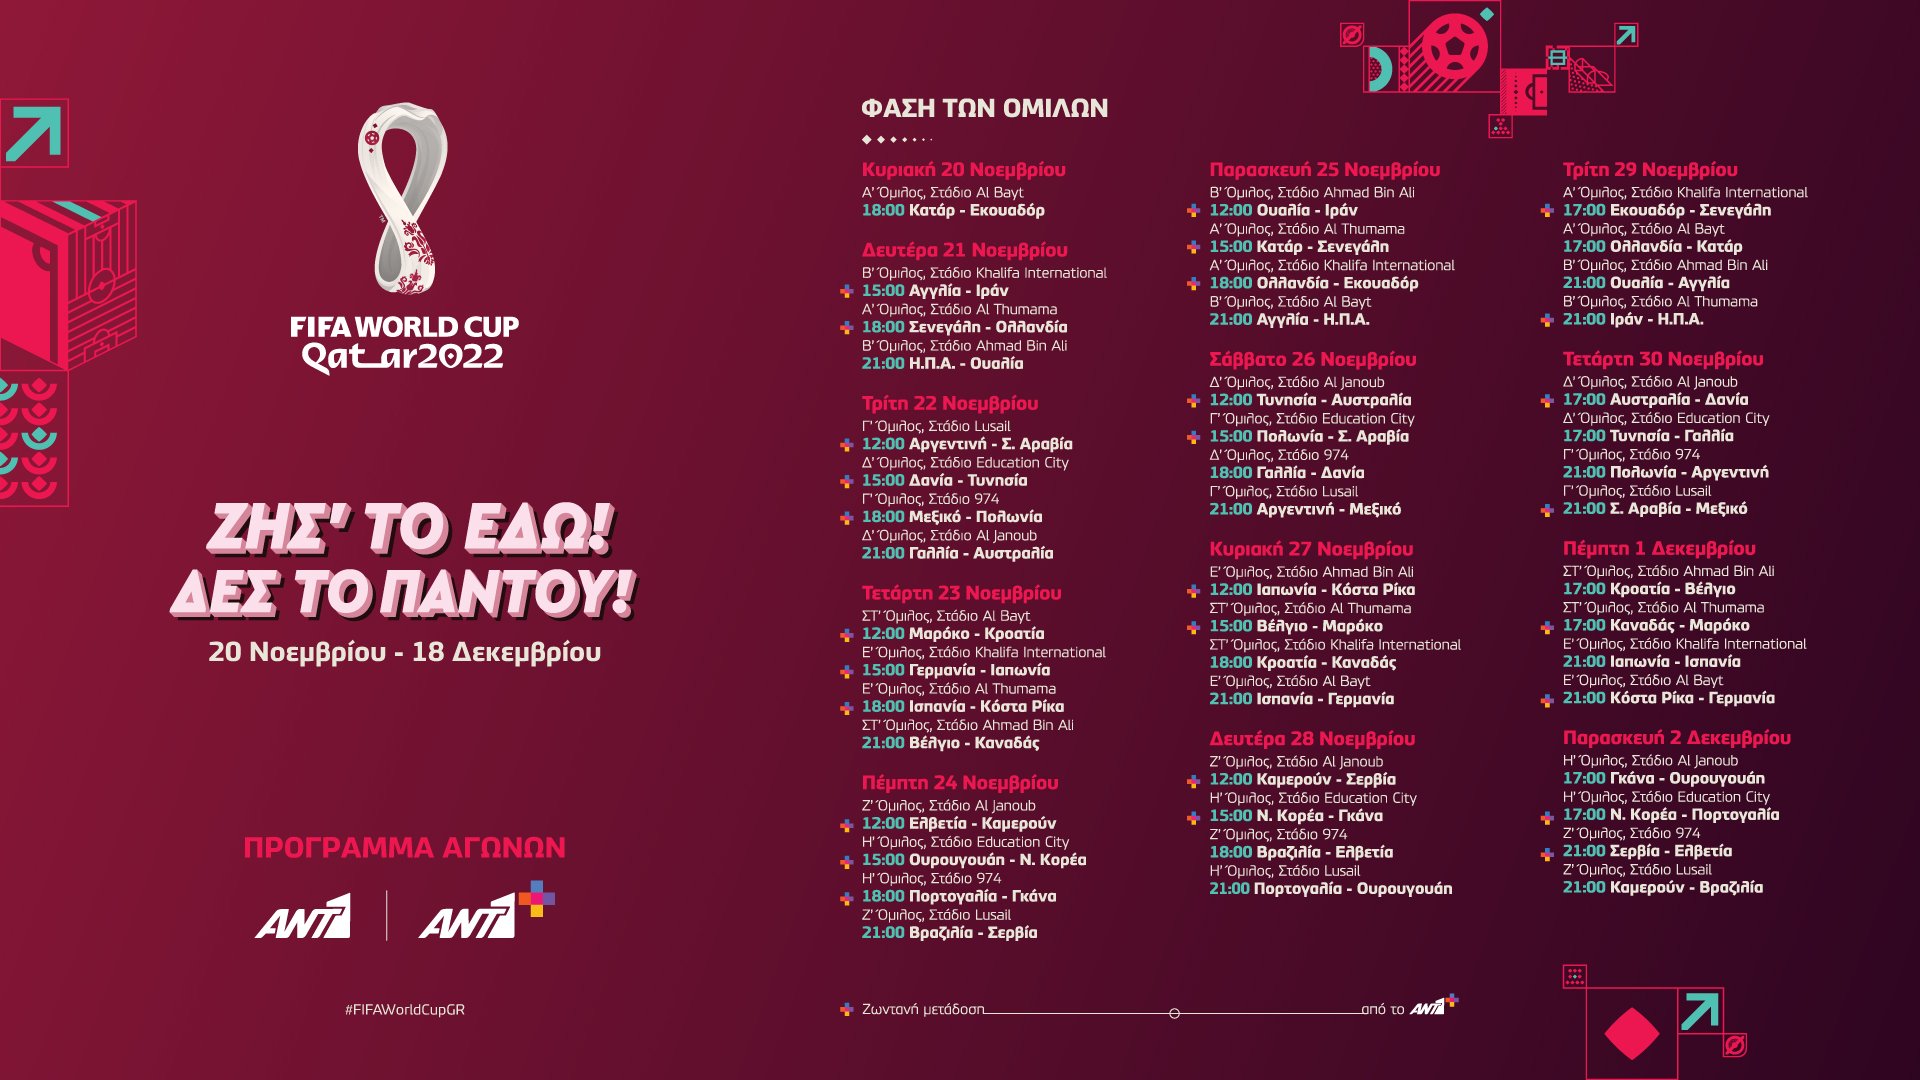 FIFA WORLD CUP QATAR 2022™: Η μεγάλη πρεμιέρα την Κυριακή 20 Νοεμβρίου αποκλειστικά στον ΑΝΤ1